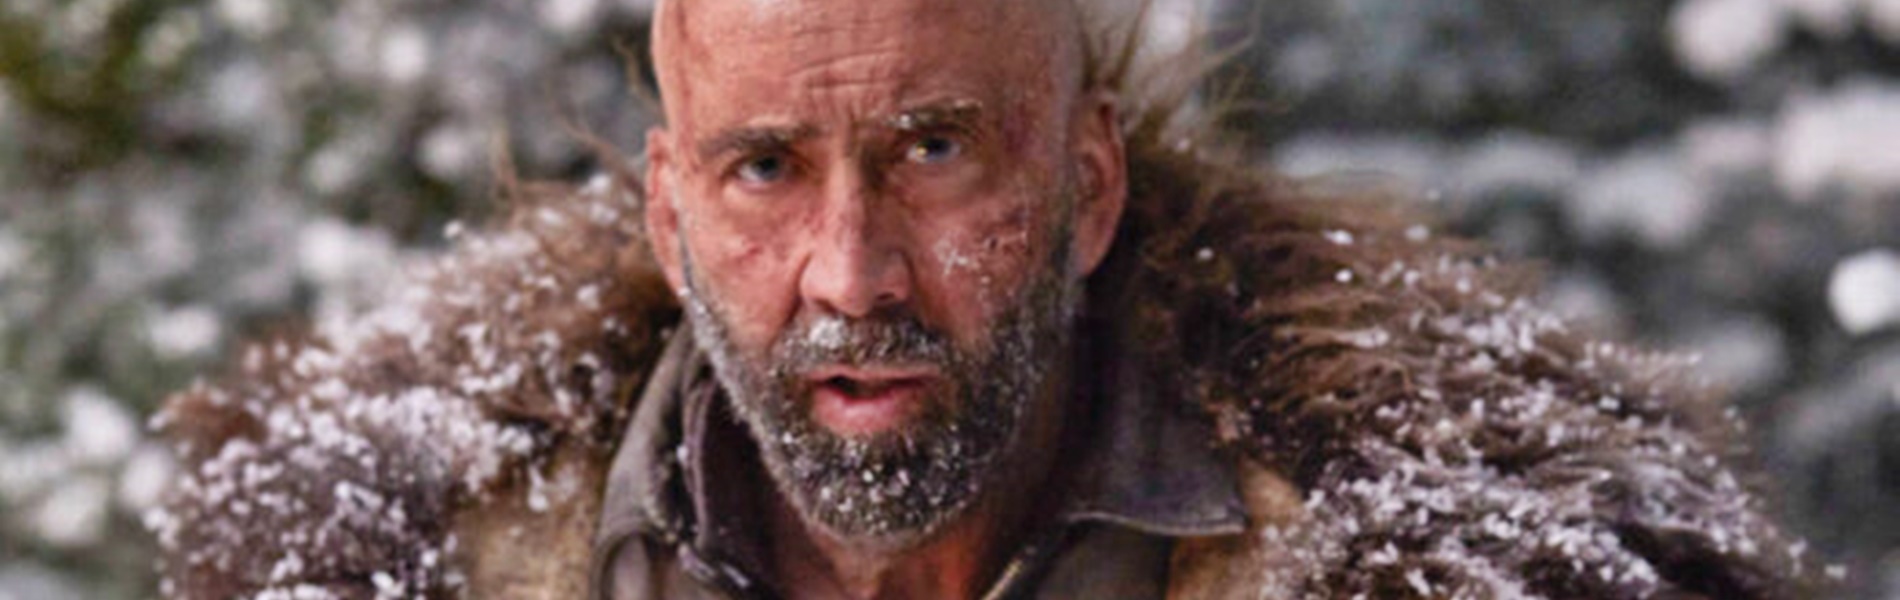 Nicolas Cage új westernfilmje is előzetest kapott - Itt a Butcher's Crossing előzetese!